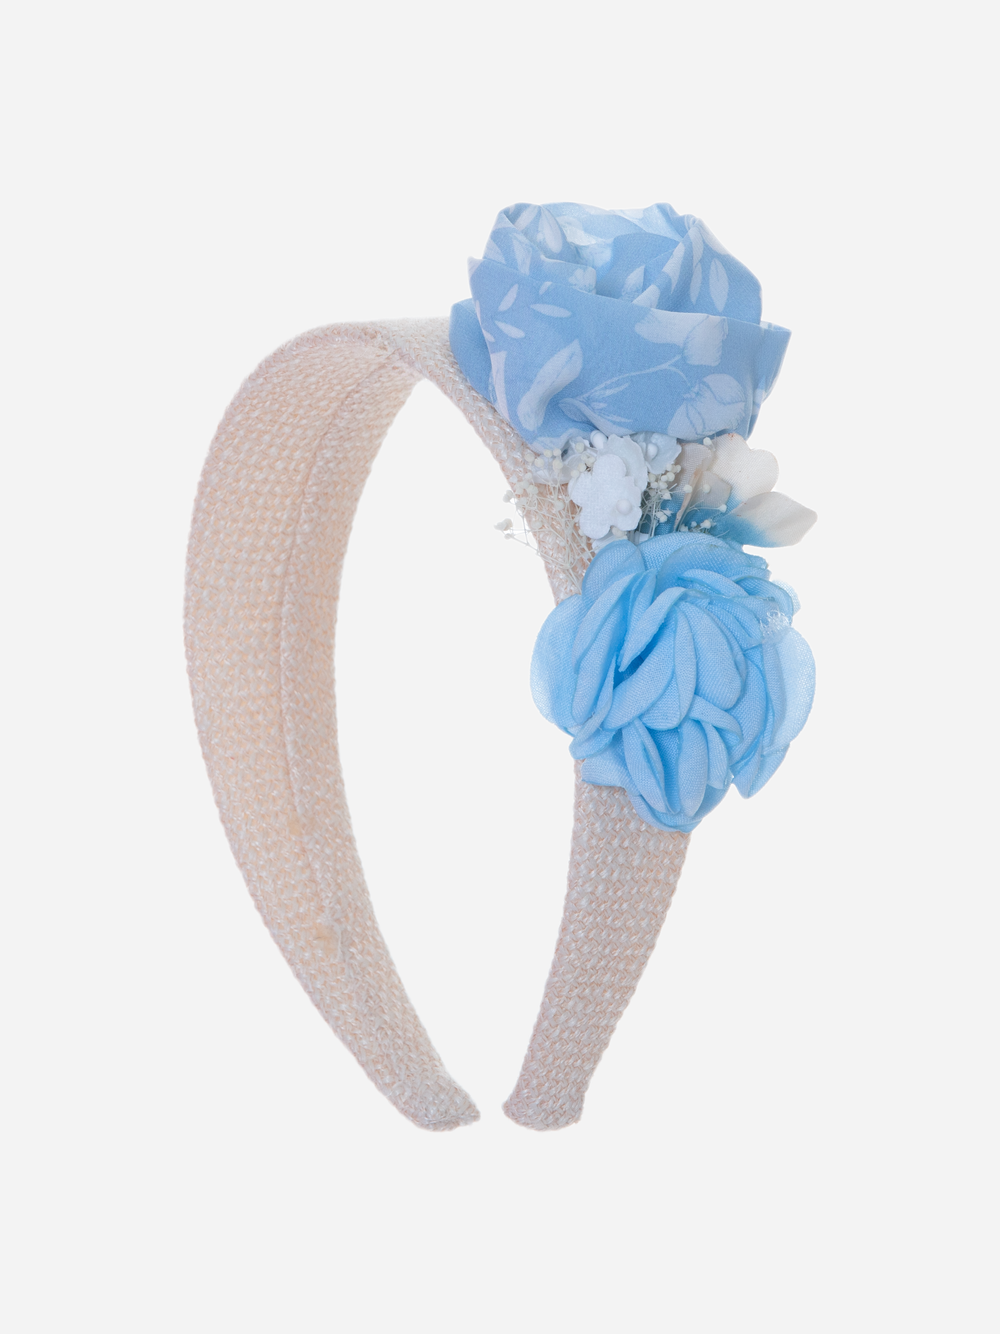 Straw headband with flowers